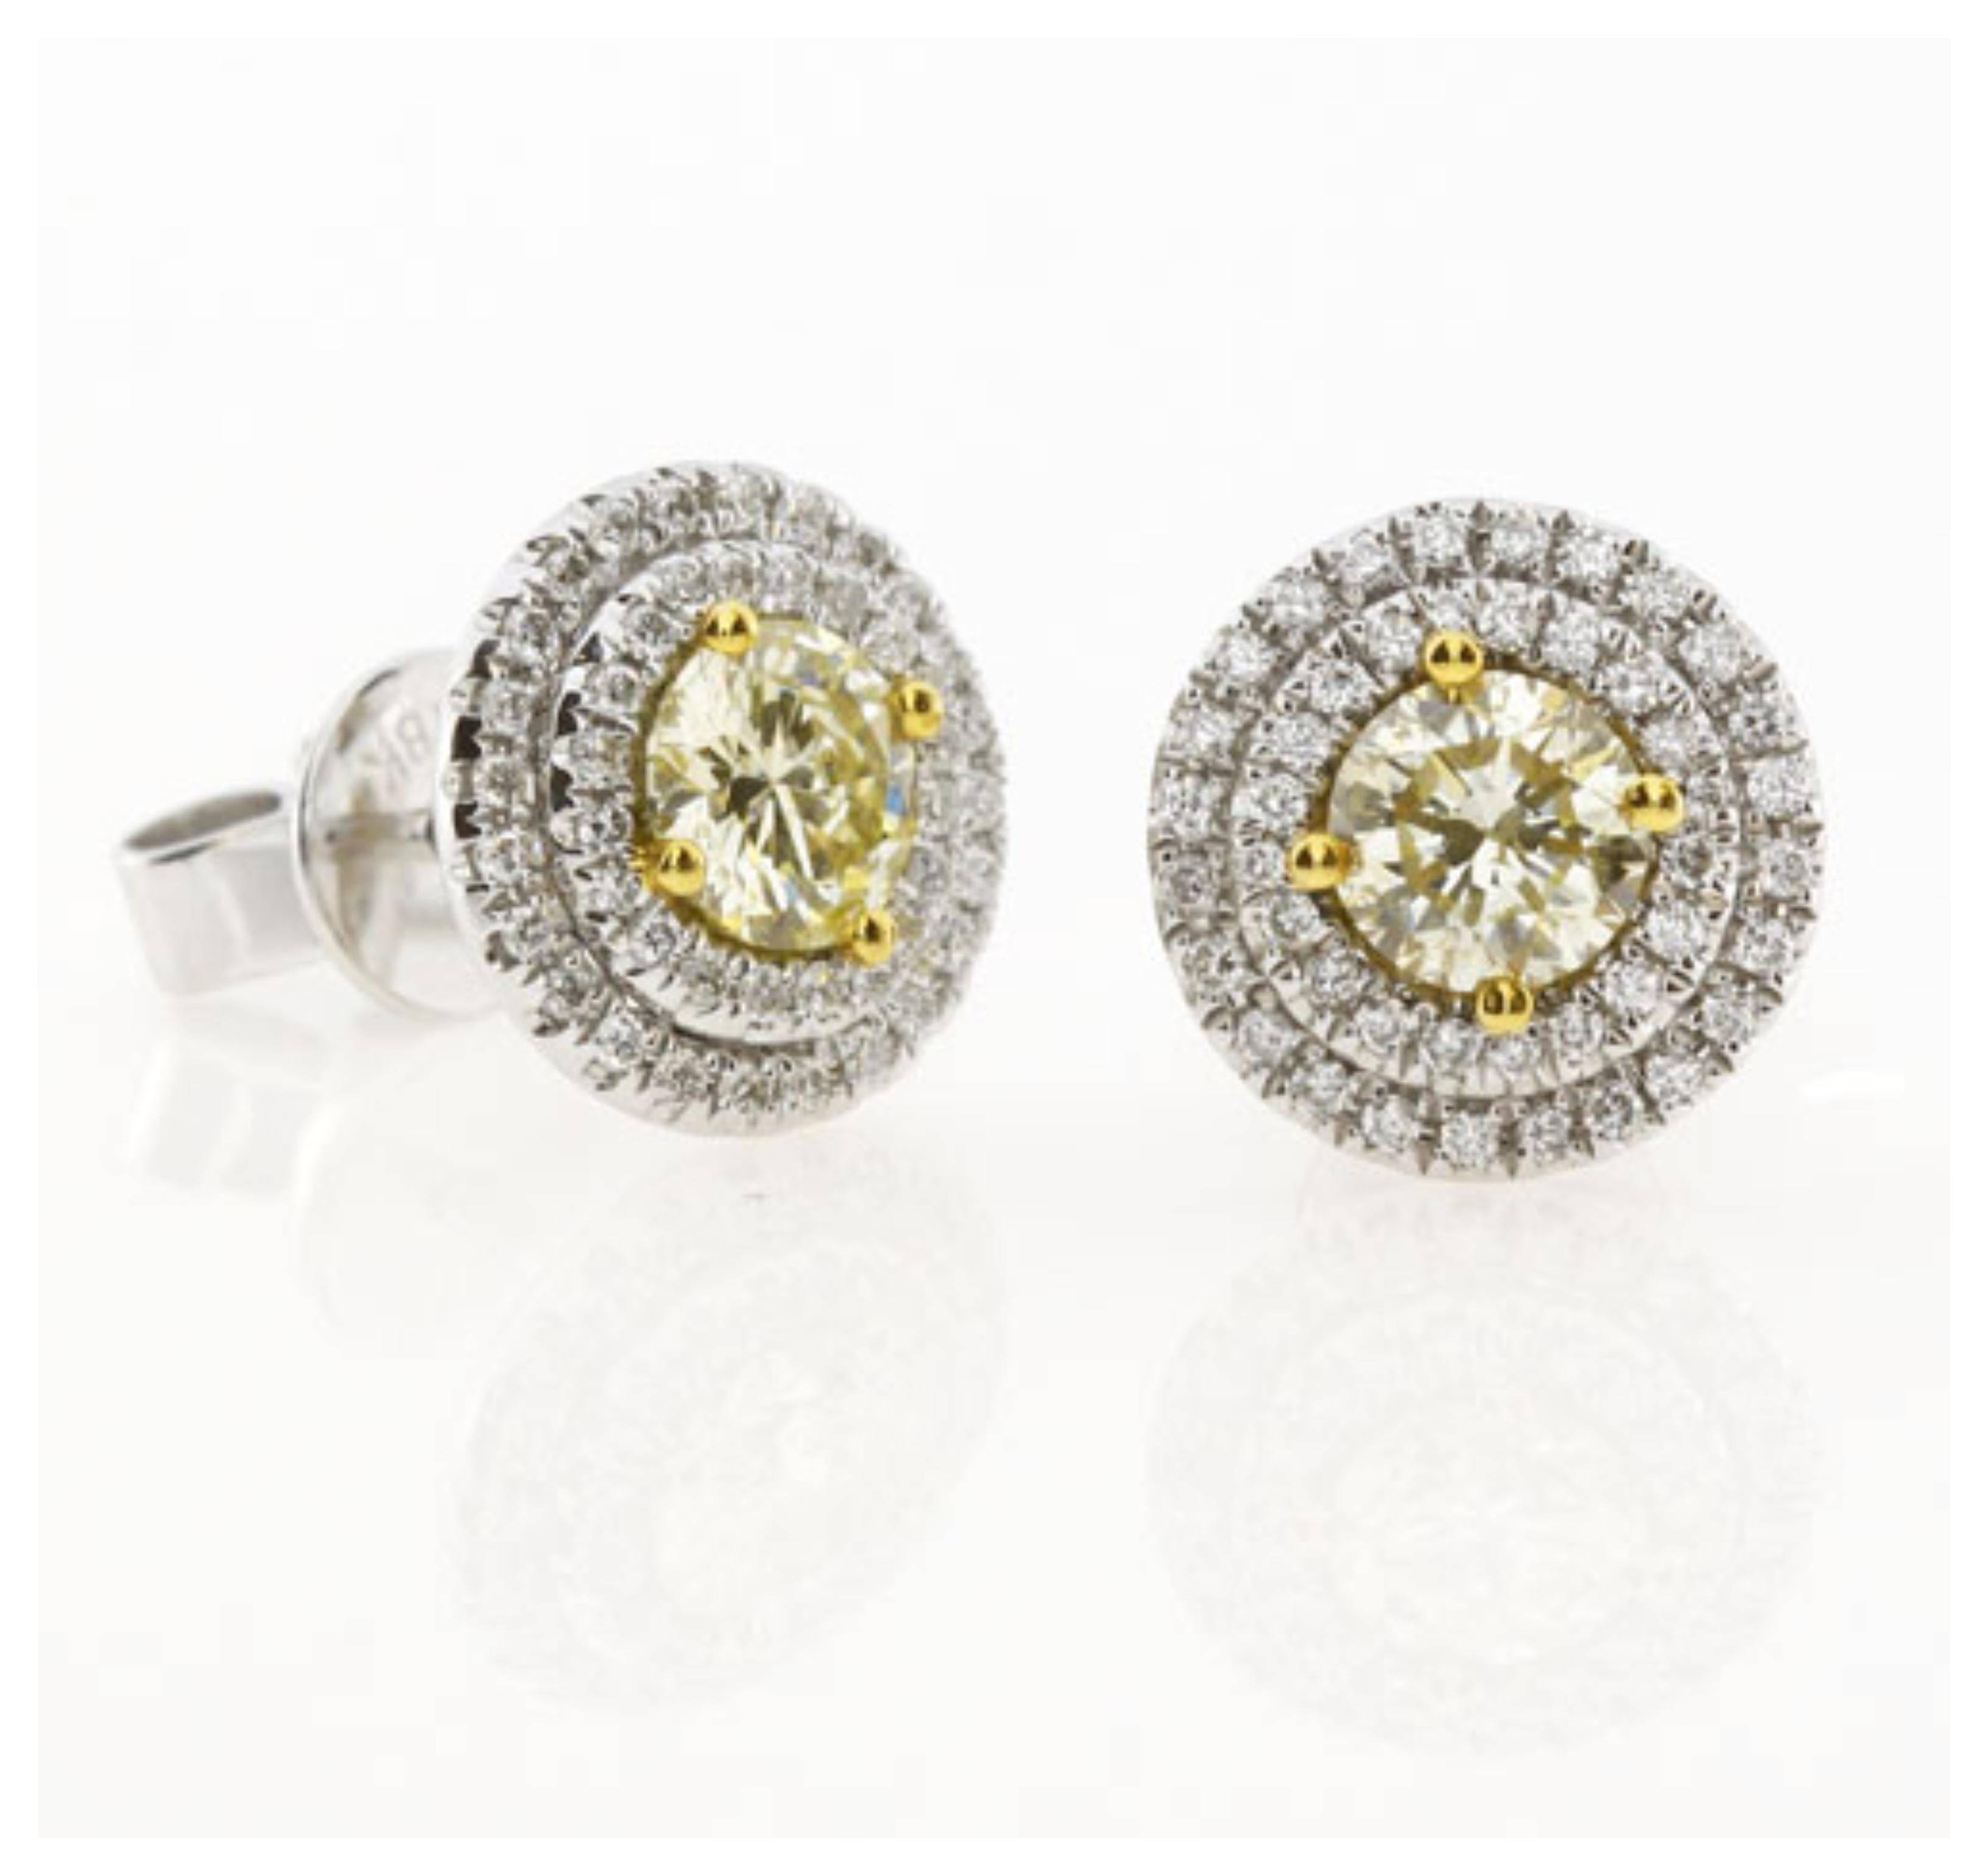 Boucles d'oreilles composées de deux diamants ronds de couleur naturelle jaune vif de 1,00 carat (0,51 carat chacun) entourés de deux rangées de diamants blancs. 
Poids total en carats : 1,36 carat
Diamants jaunes : 1,02 carat (2 pierres au